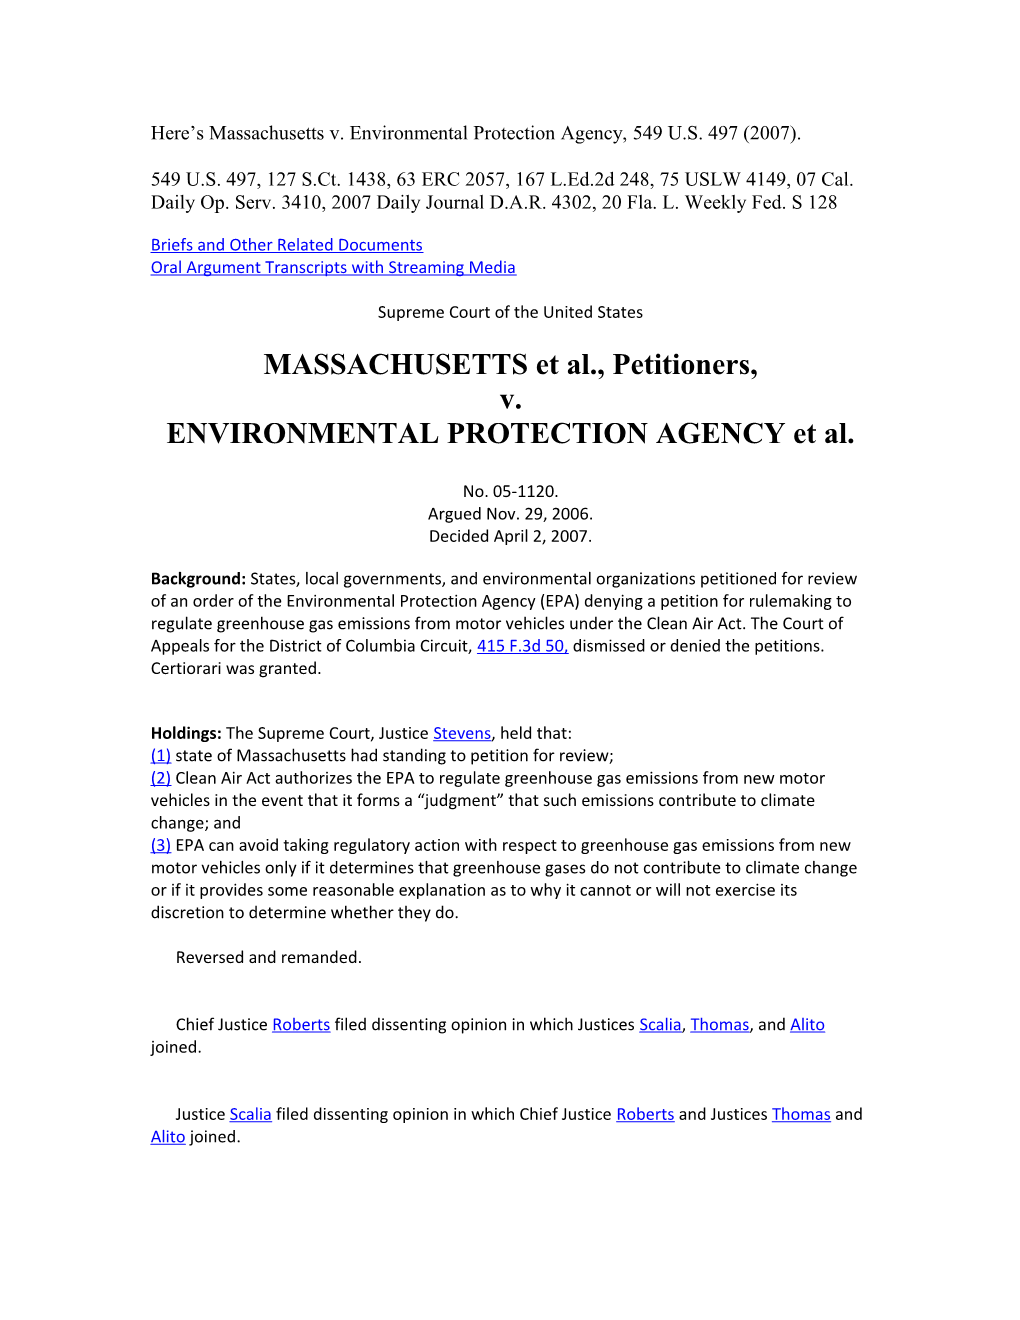 Here S Massachusetts V. Environmental Protection Agency, 549 U.S. 497 (2007)